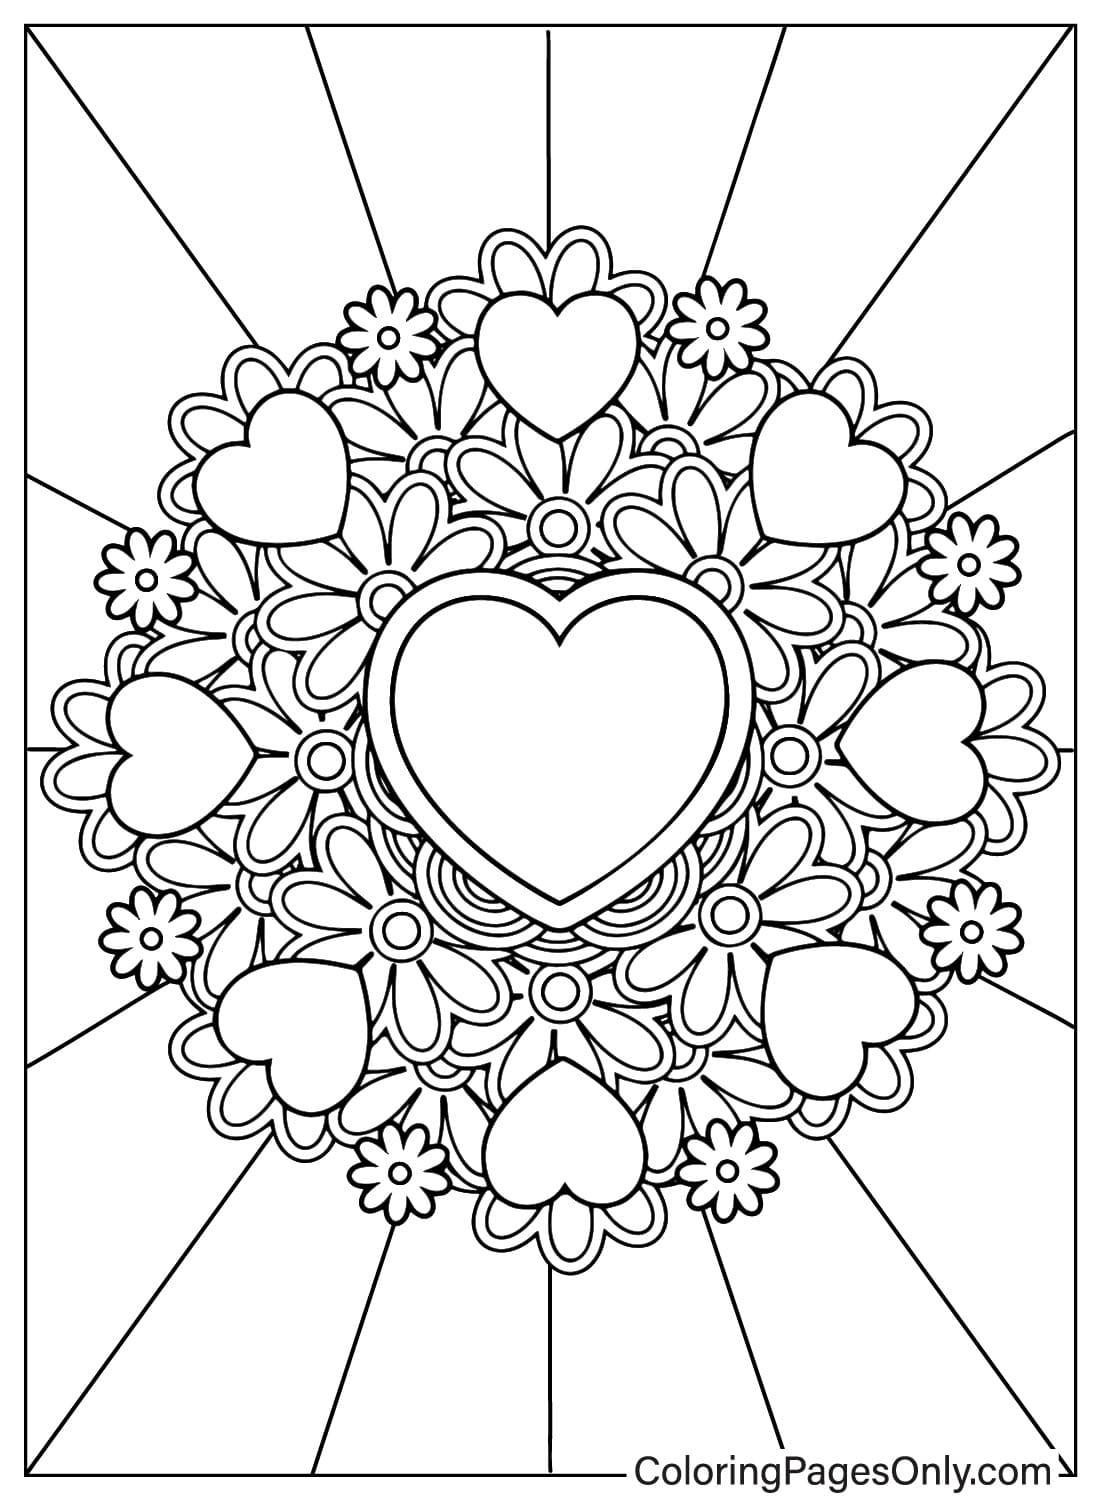 Página para colorear de corazón imprimible gratis desde Corazón